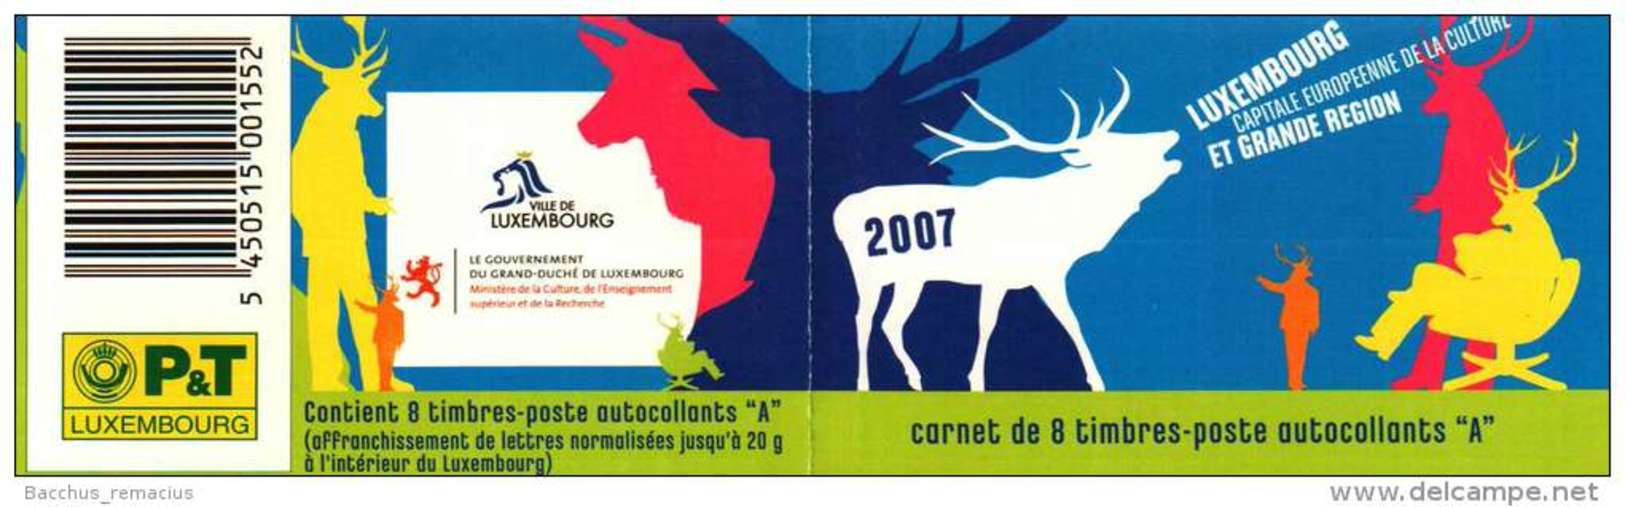 Luxembourg Et Grande Région  Carnet De 8 Timbres "A"  Autocollants Capitale Européenne De La Culture 2007 - Libretti